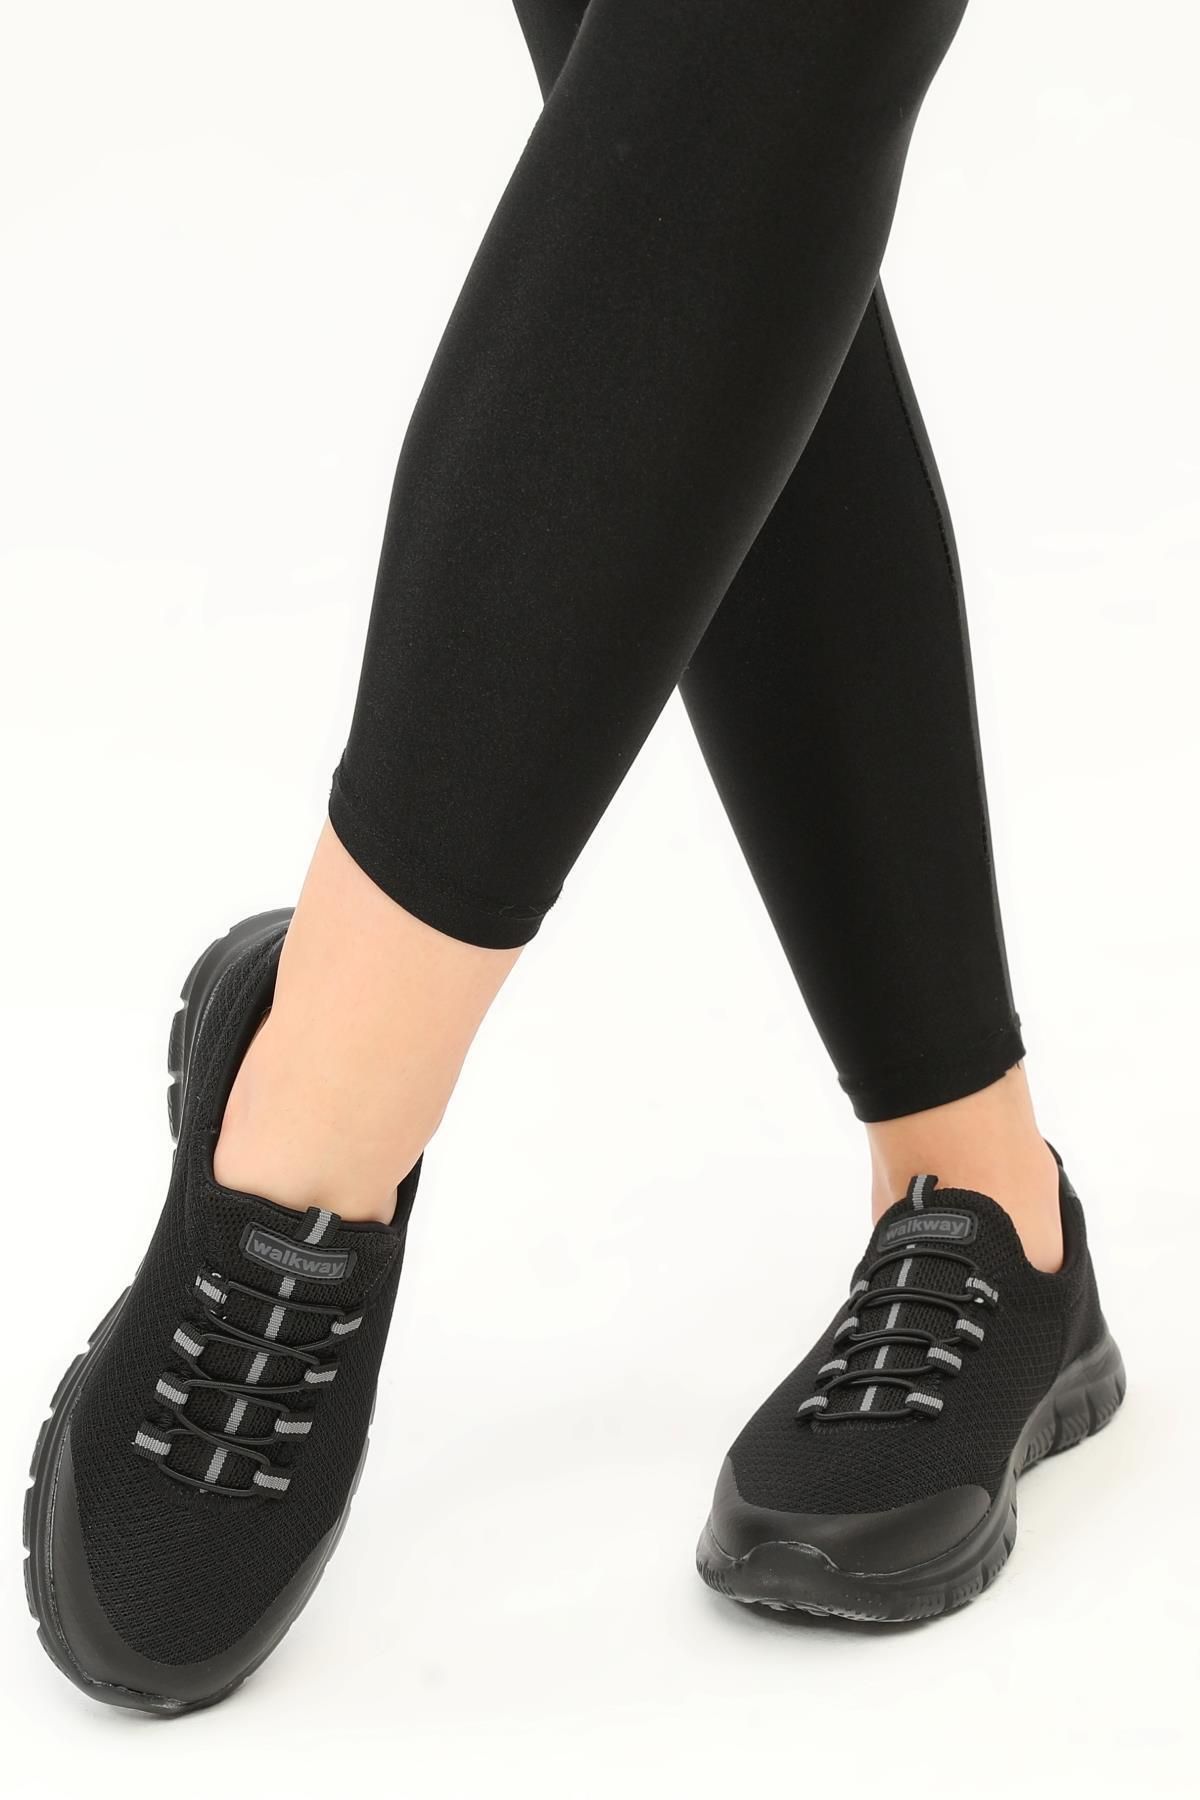 WALKWAY Flexible Siyah-siyah Unisex Bağcıksız Yürüyüş Ayakkabı